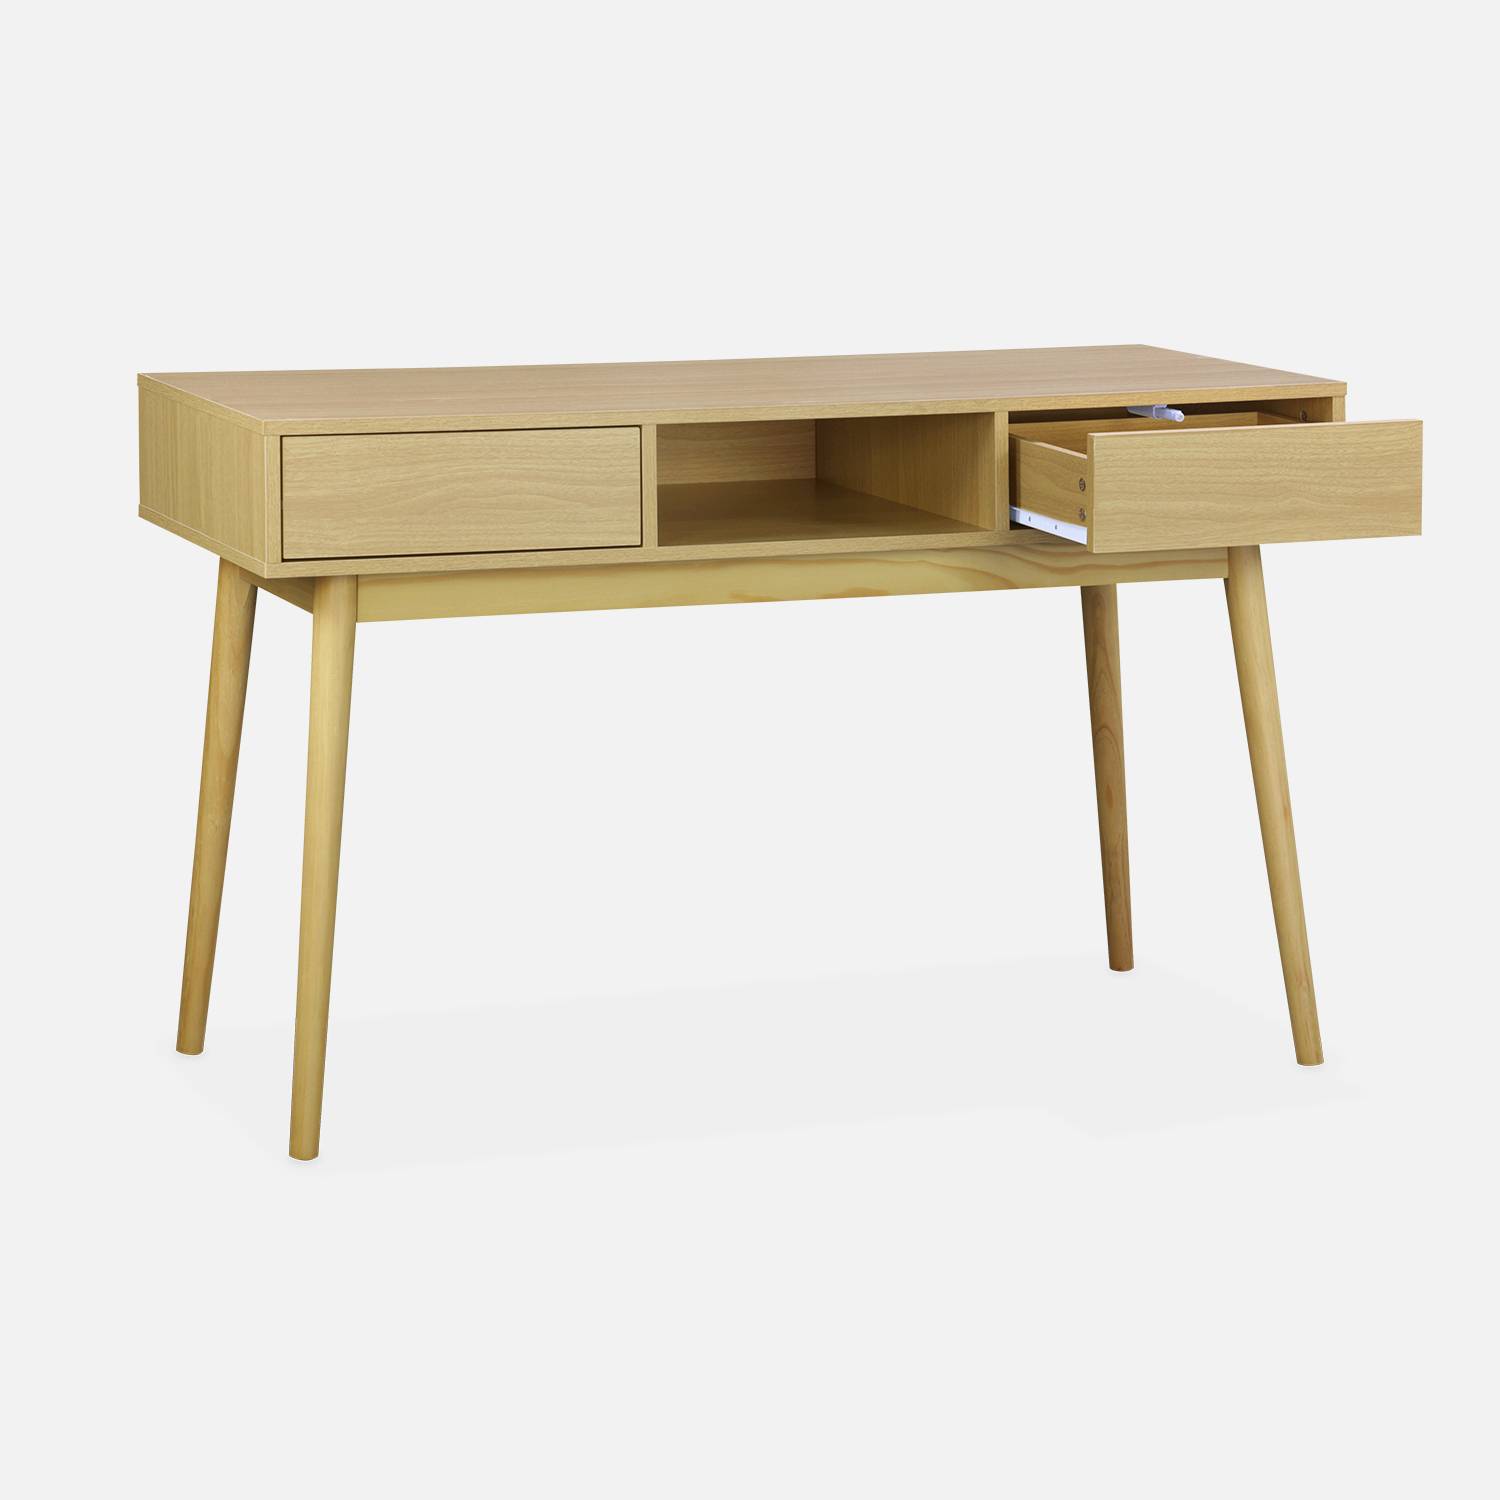 Console décor bois - Mika - 2 tiroirs, 1 casier de rangement, pieds scandinaves, L 120 x l 48 x H 75cm  Photo2